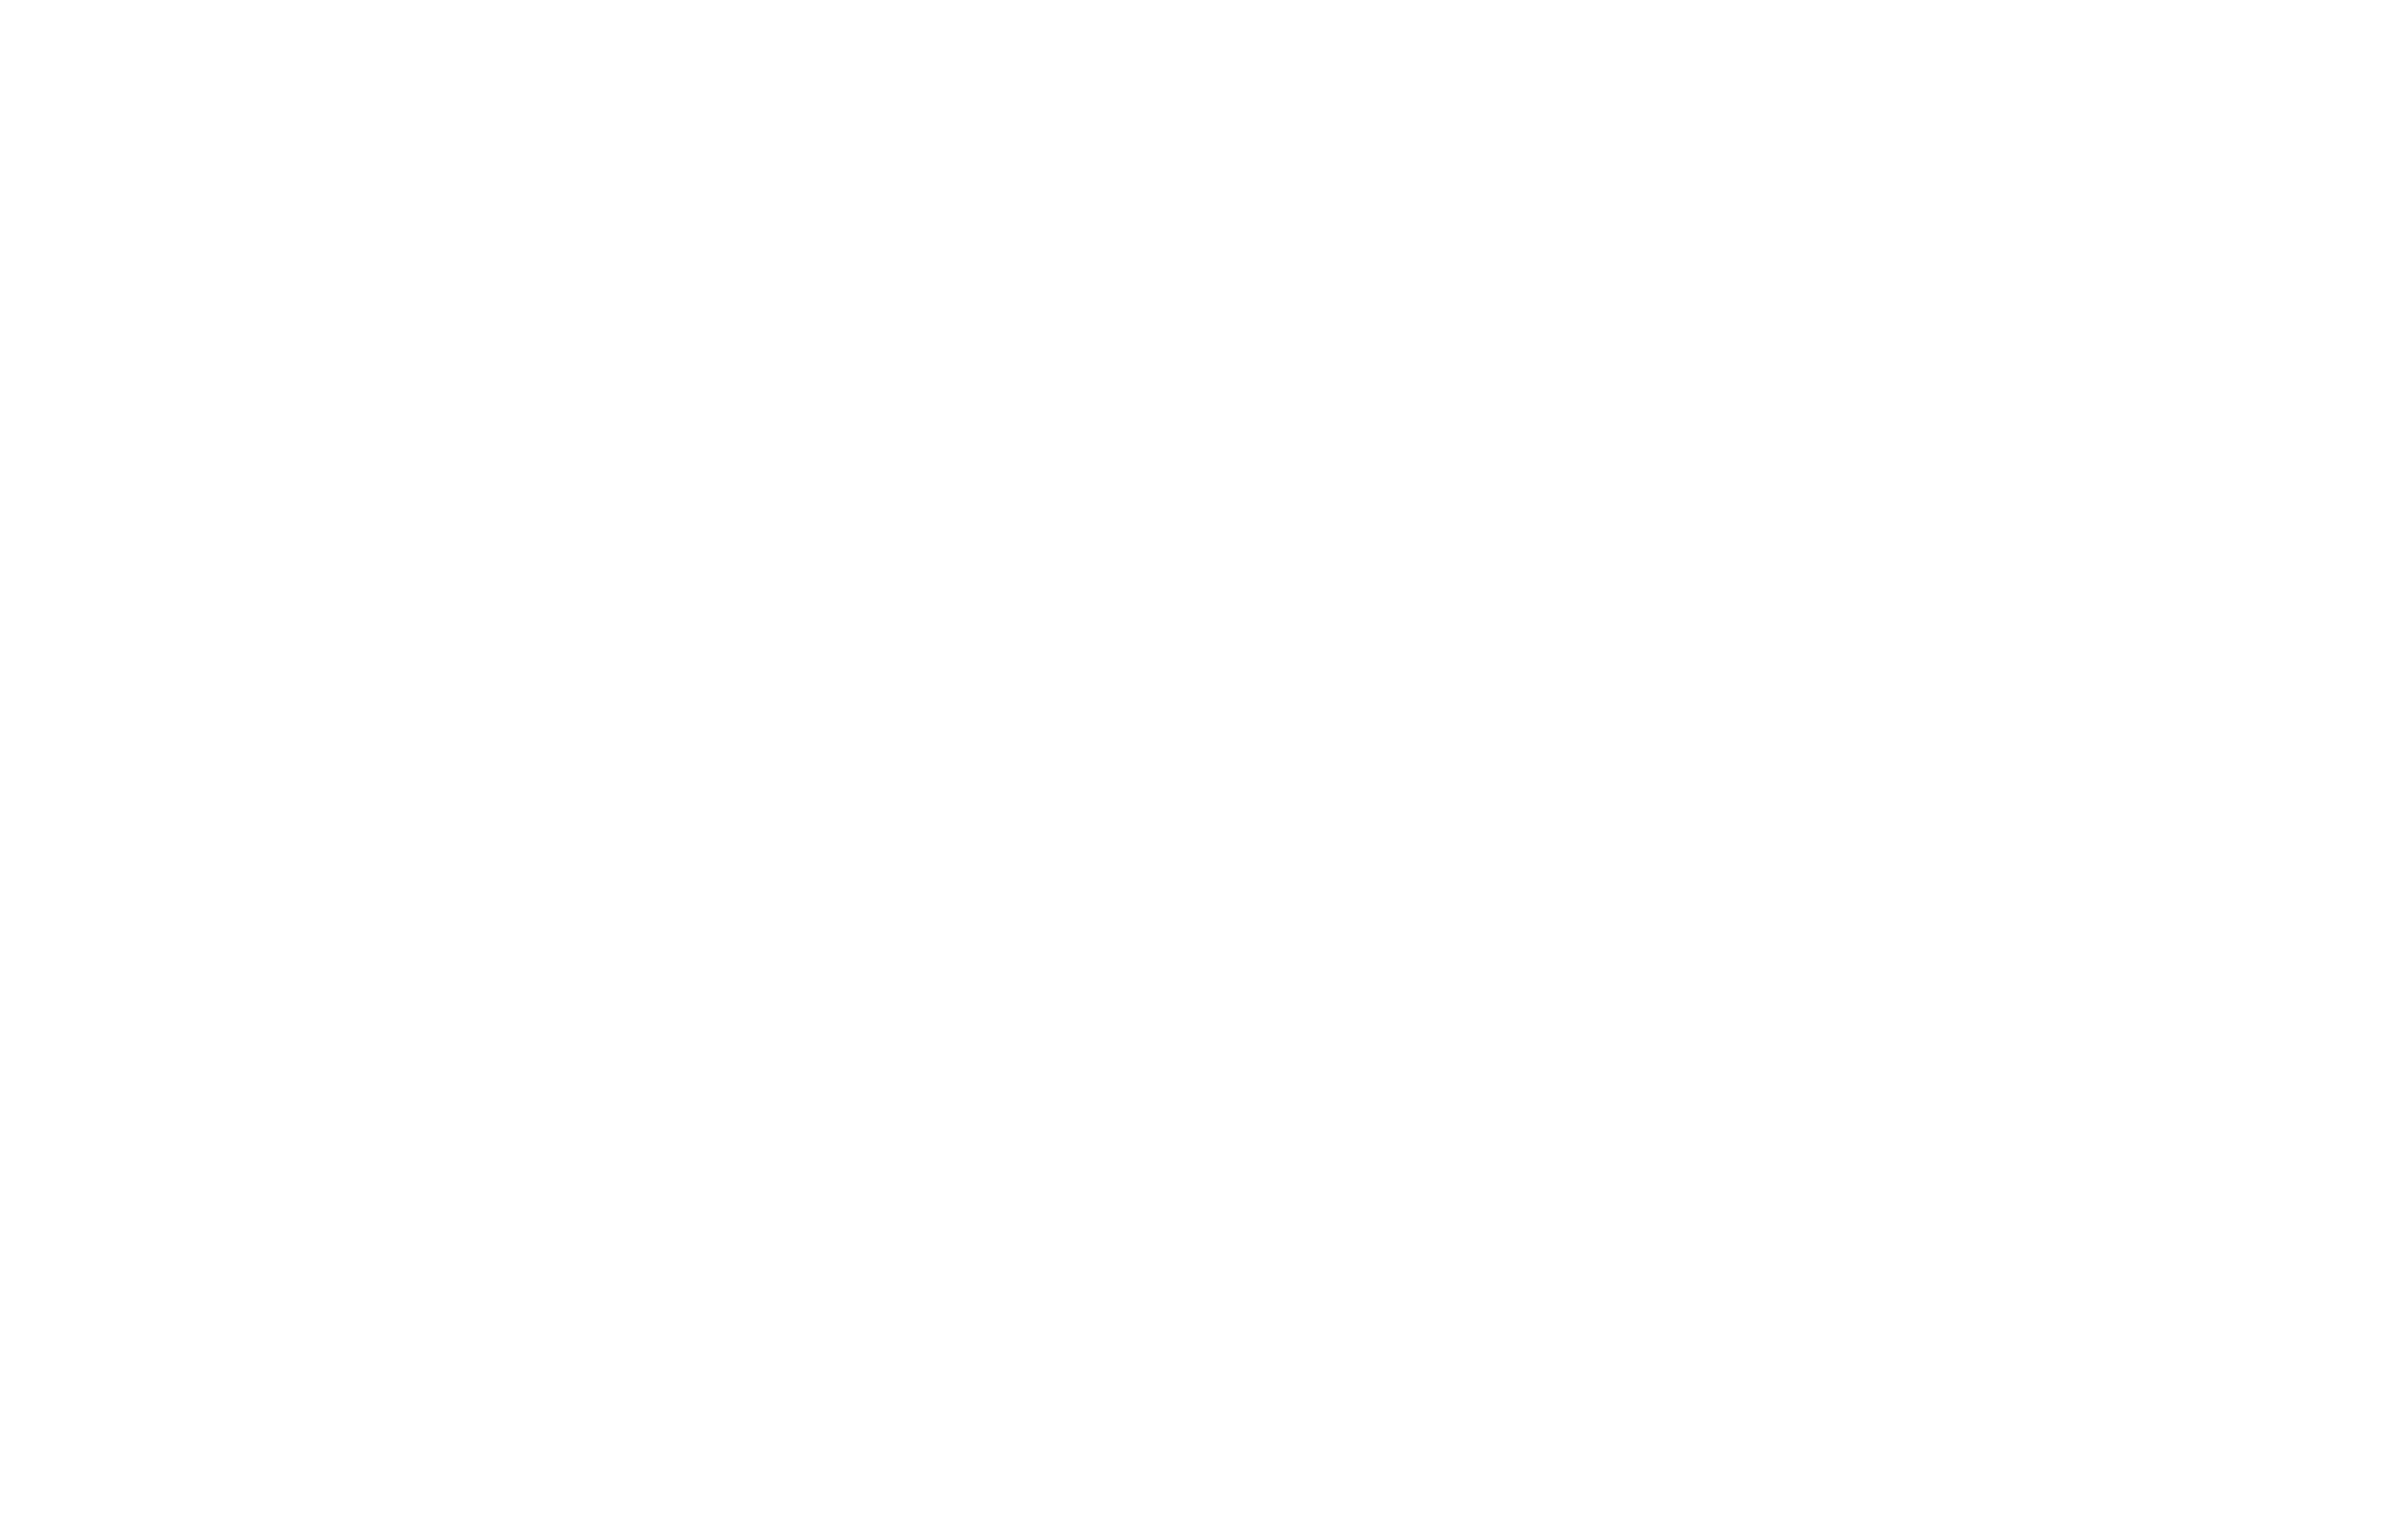 R&D Logo in Buchstaben mit Pfeilen in einem Rechteck